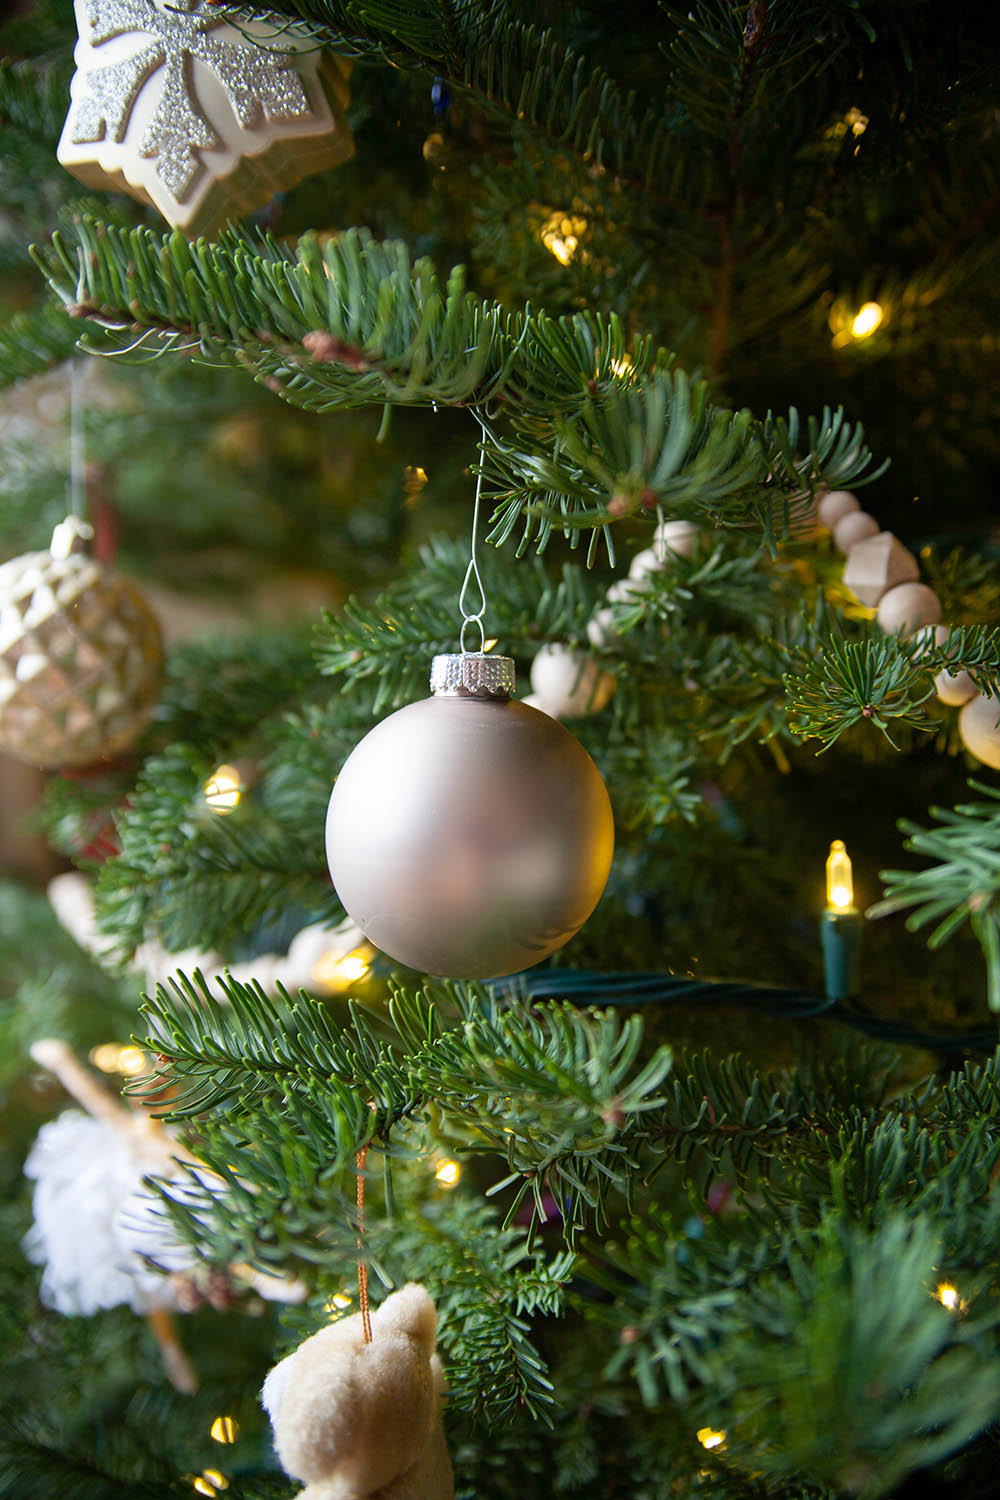 Christmas ornament on Christmas tree